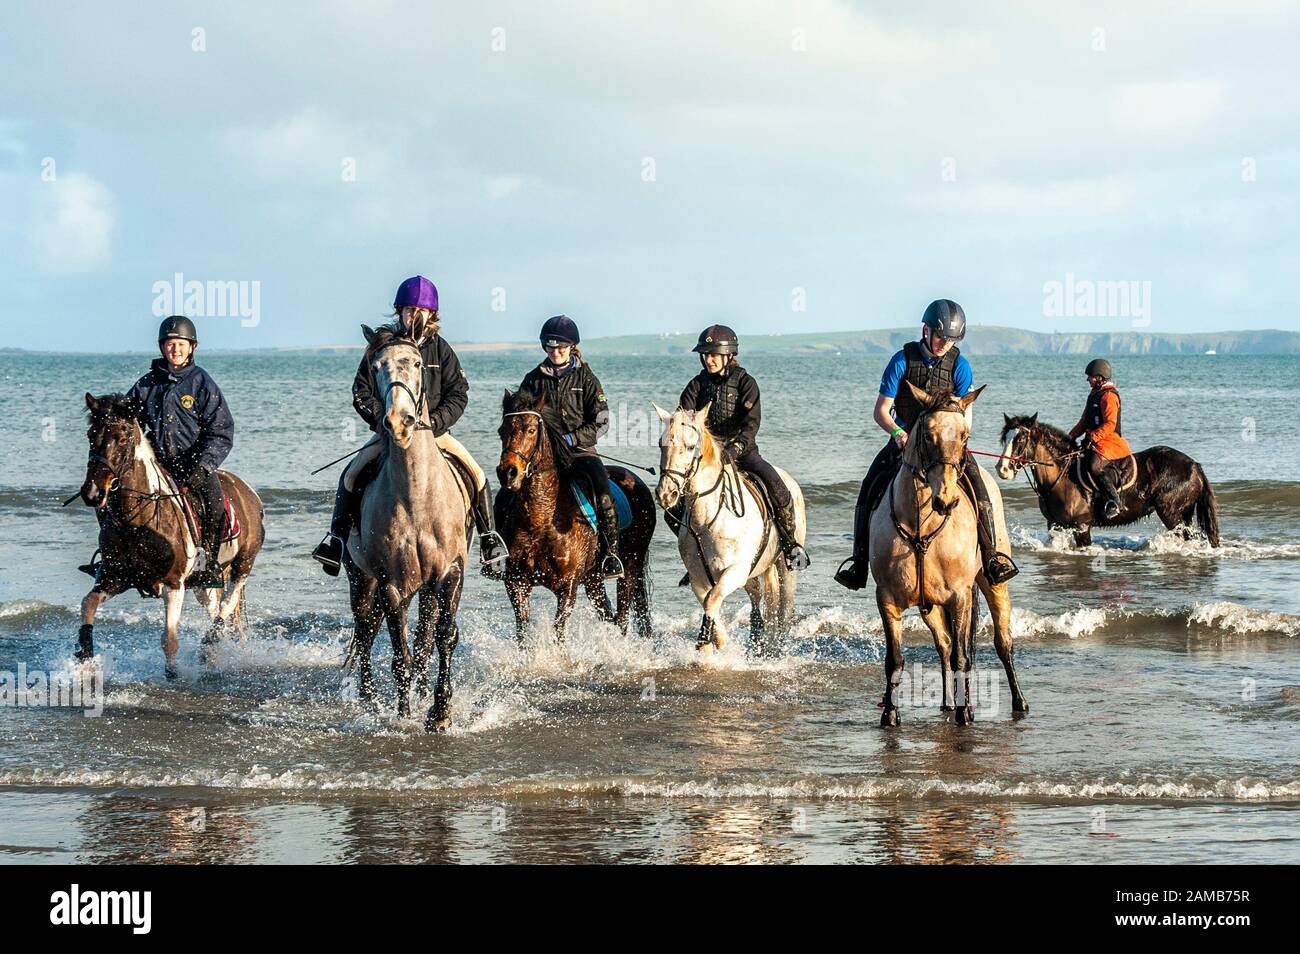 Butlerstown, West Cork, Irlanda. 12 de enero de 2020. El paseo anual Carberry Hunt Butlerstown Fun Ride tuvo lugar hoy en día con cientos de caballos y jinetes participando. Los caballos se divierten en la playa de Broadstrand. Crédito: Andy Gibson/Alamy Live News Foto de stock